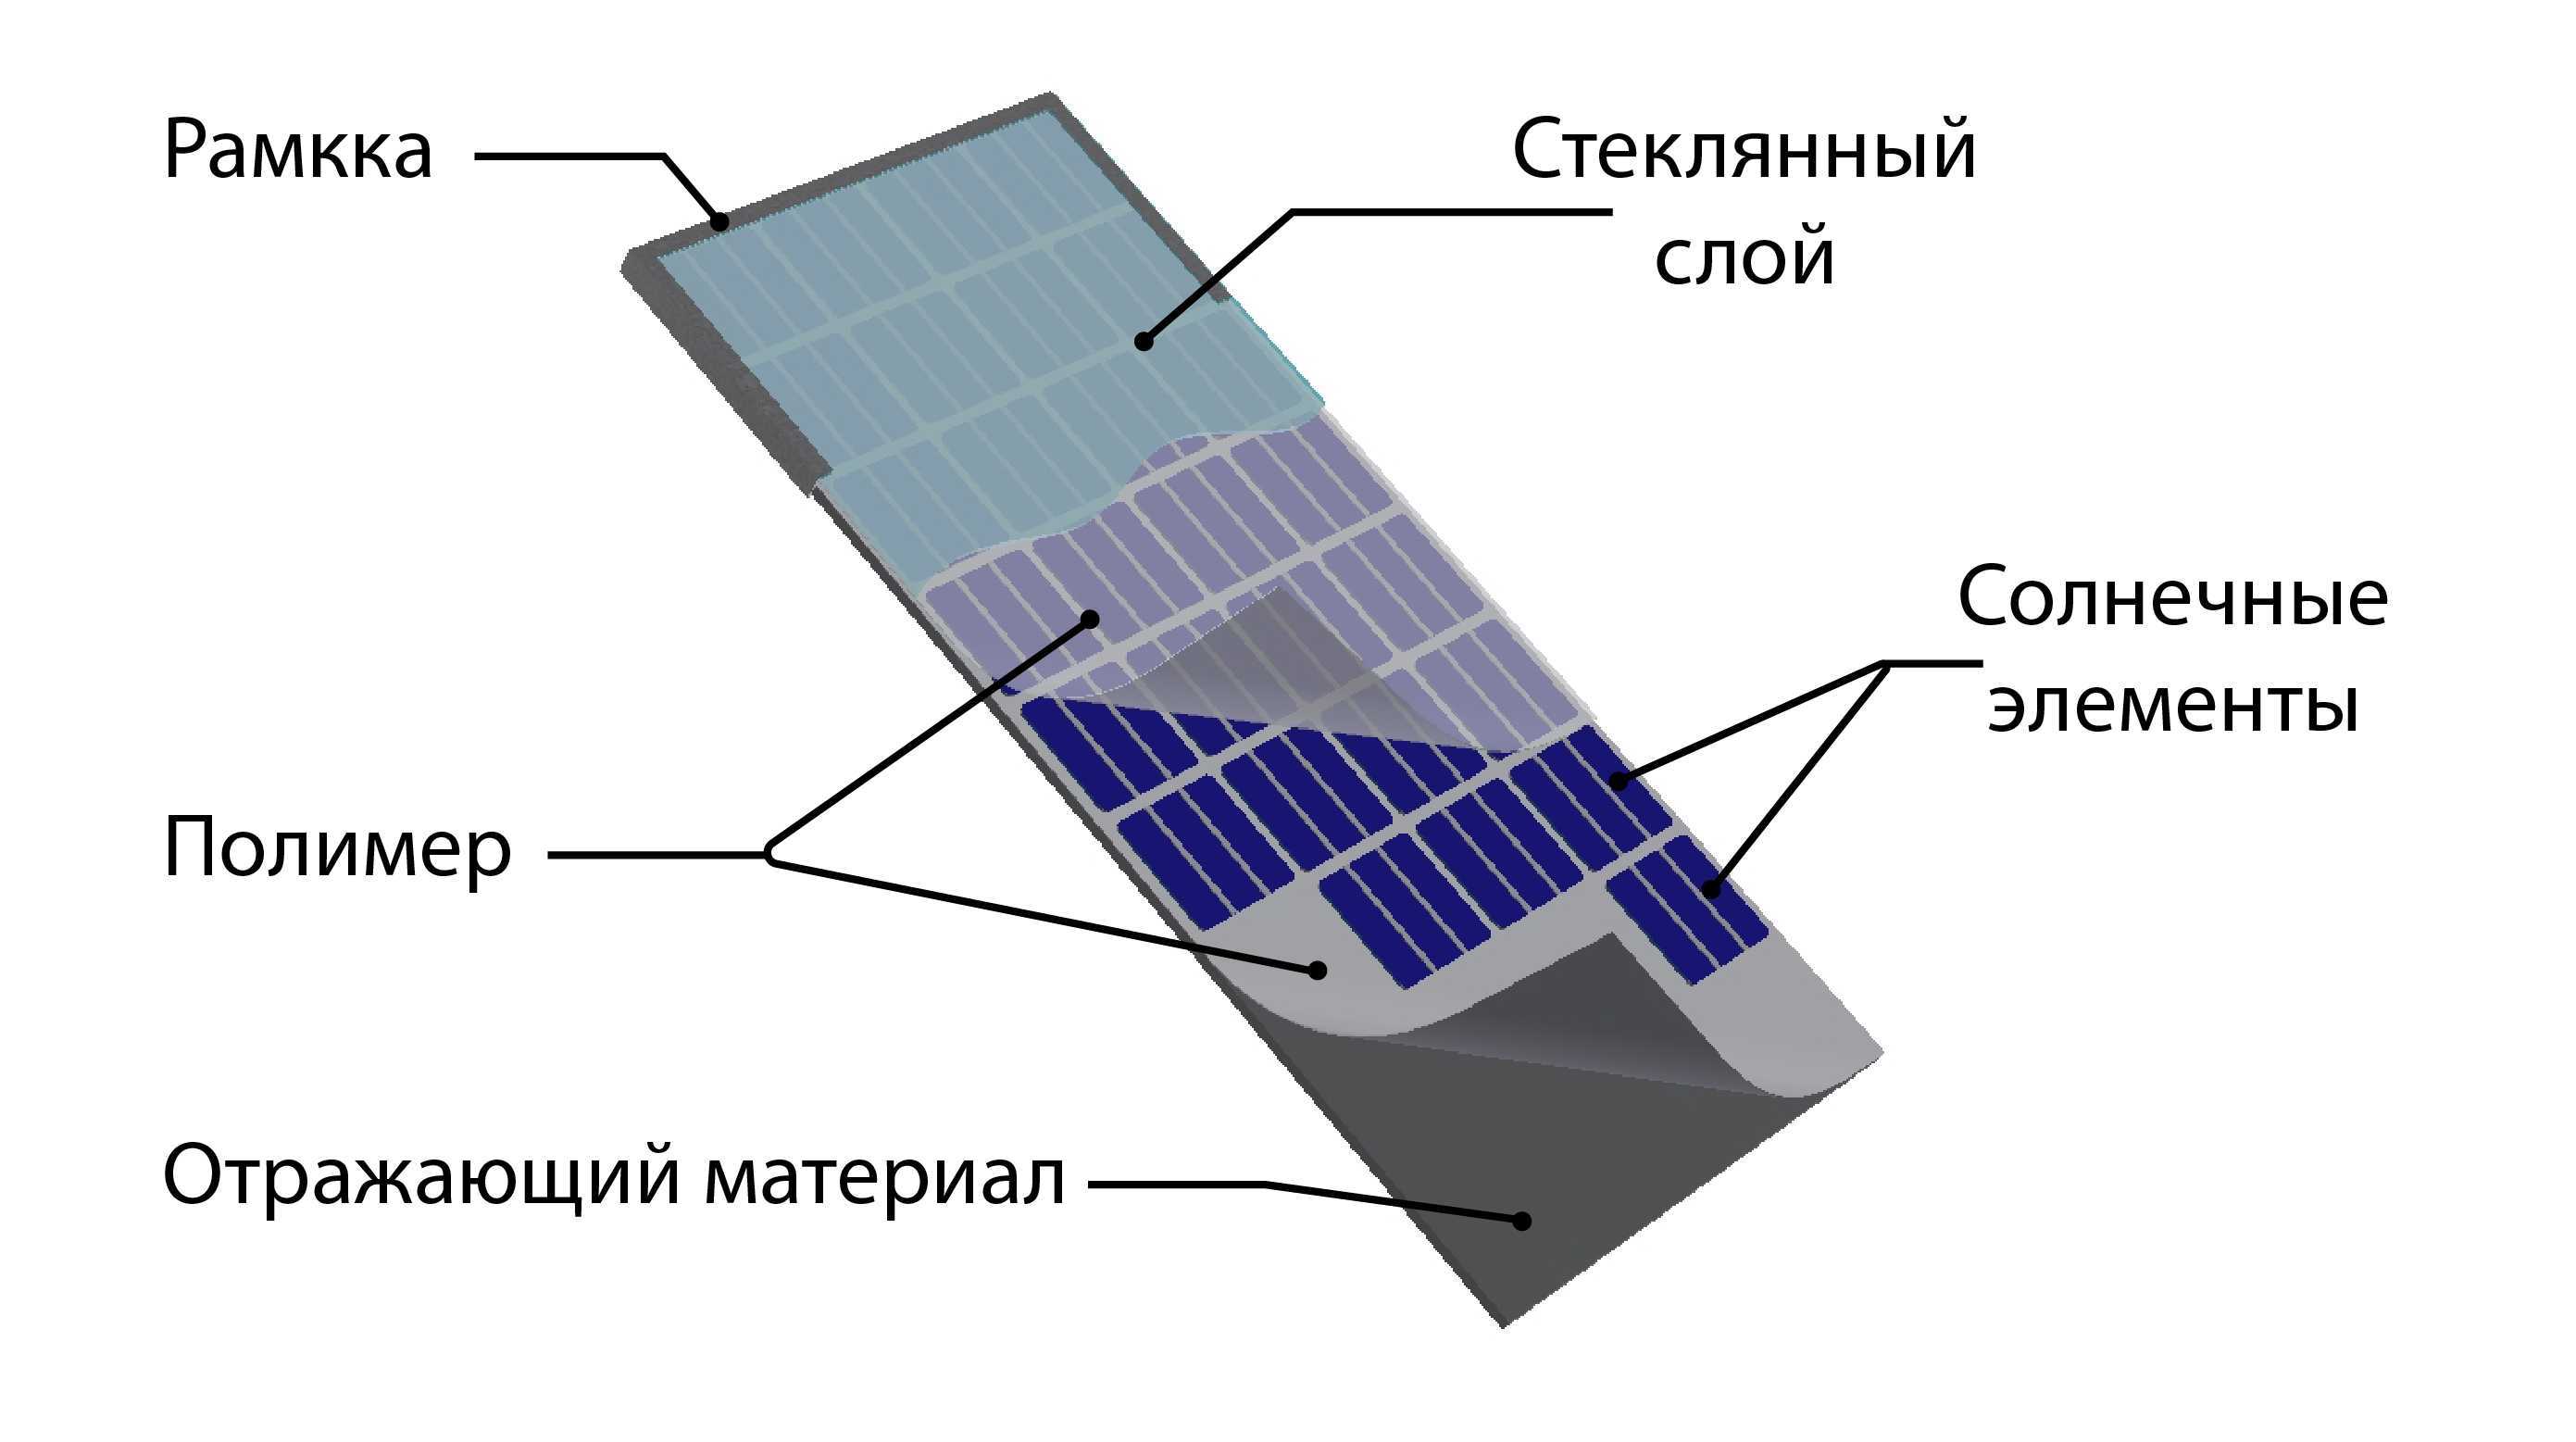 Принцип работы и устройство солнечной батареи - полный обзор. жми!